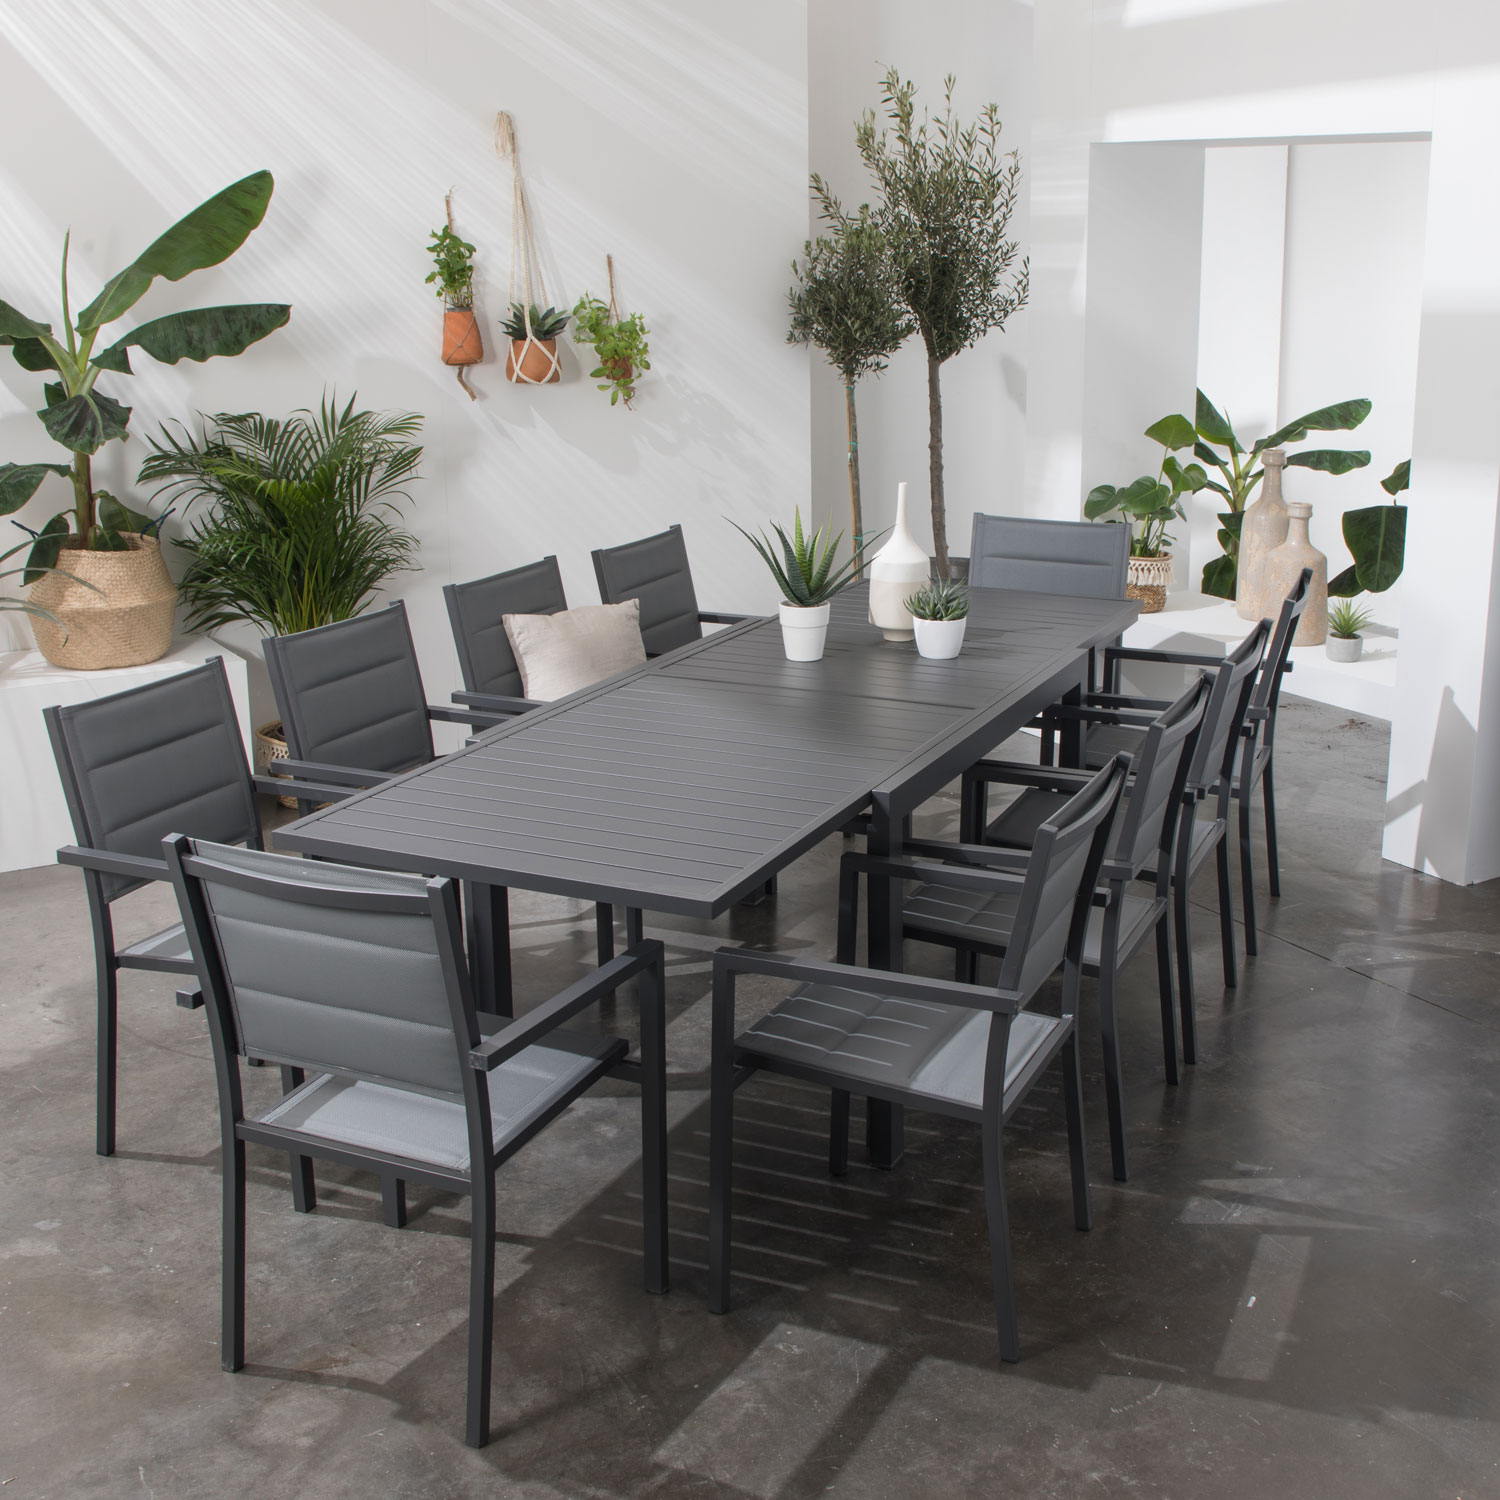 Set di mobili da giardino estensibili in textilene grigio VENEZIA 10 posti - alluminio antracite